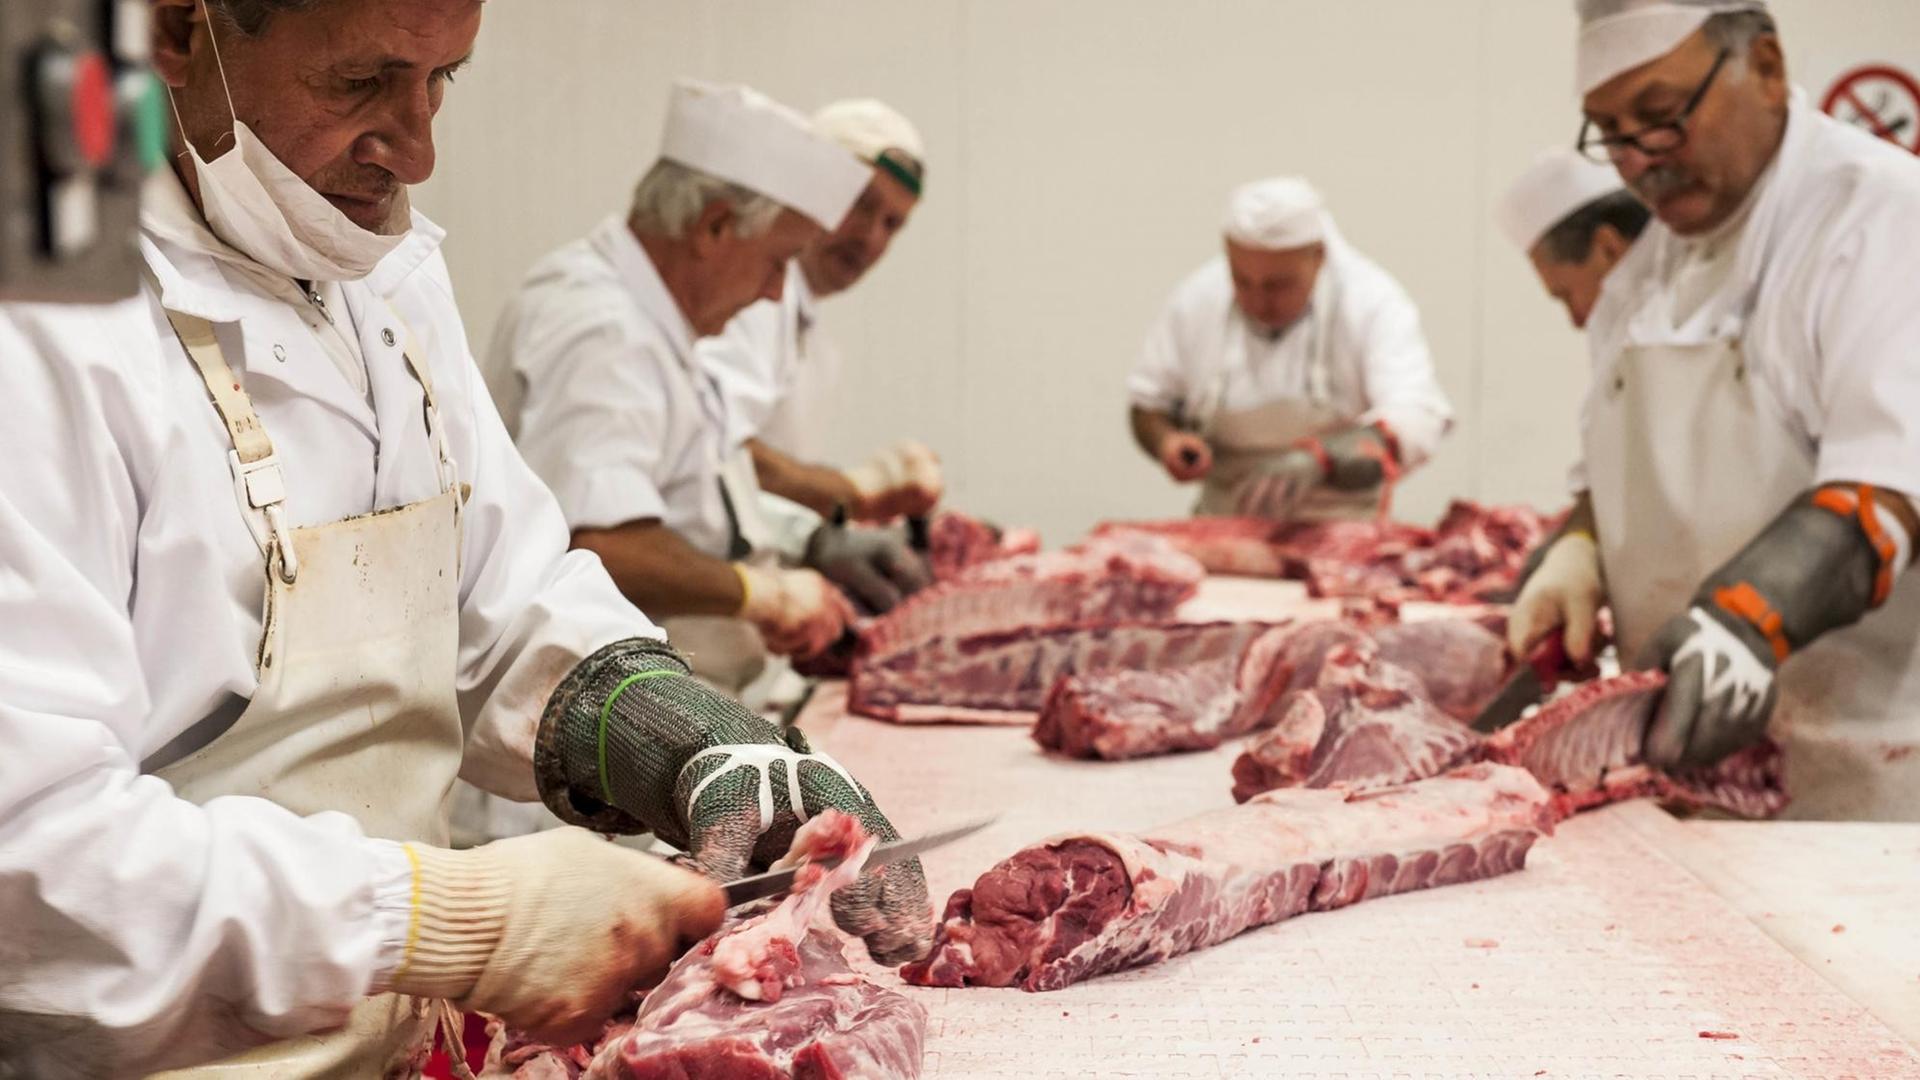 Arbeiter verarbeiten Fleisch in einem Schlachtbetrieb.